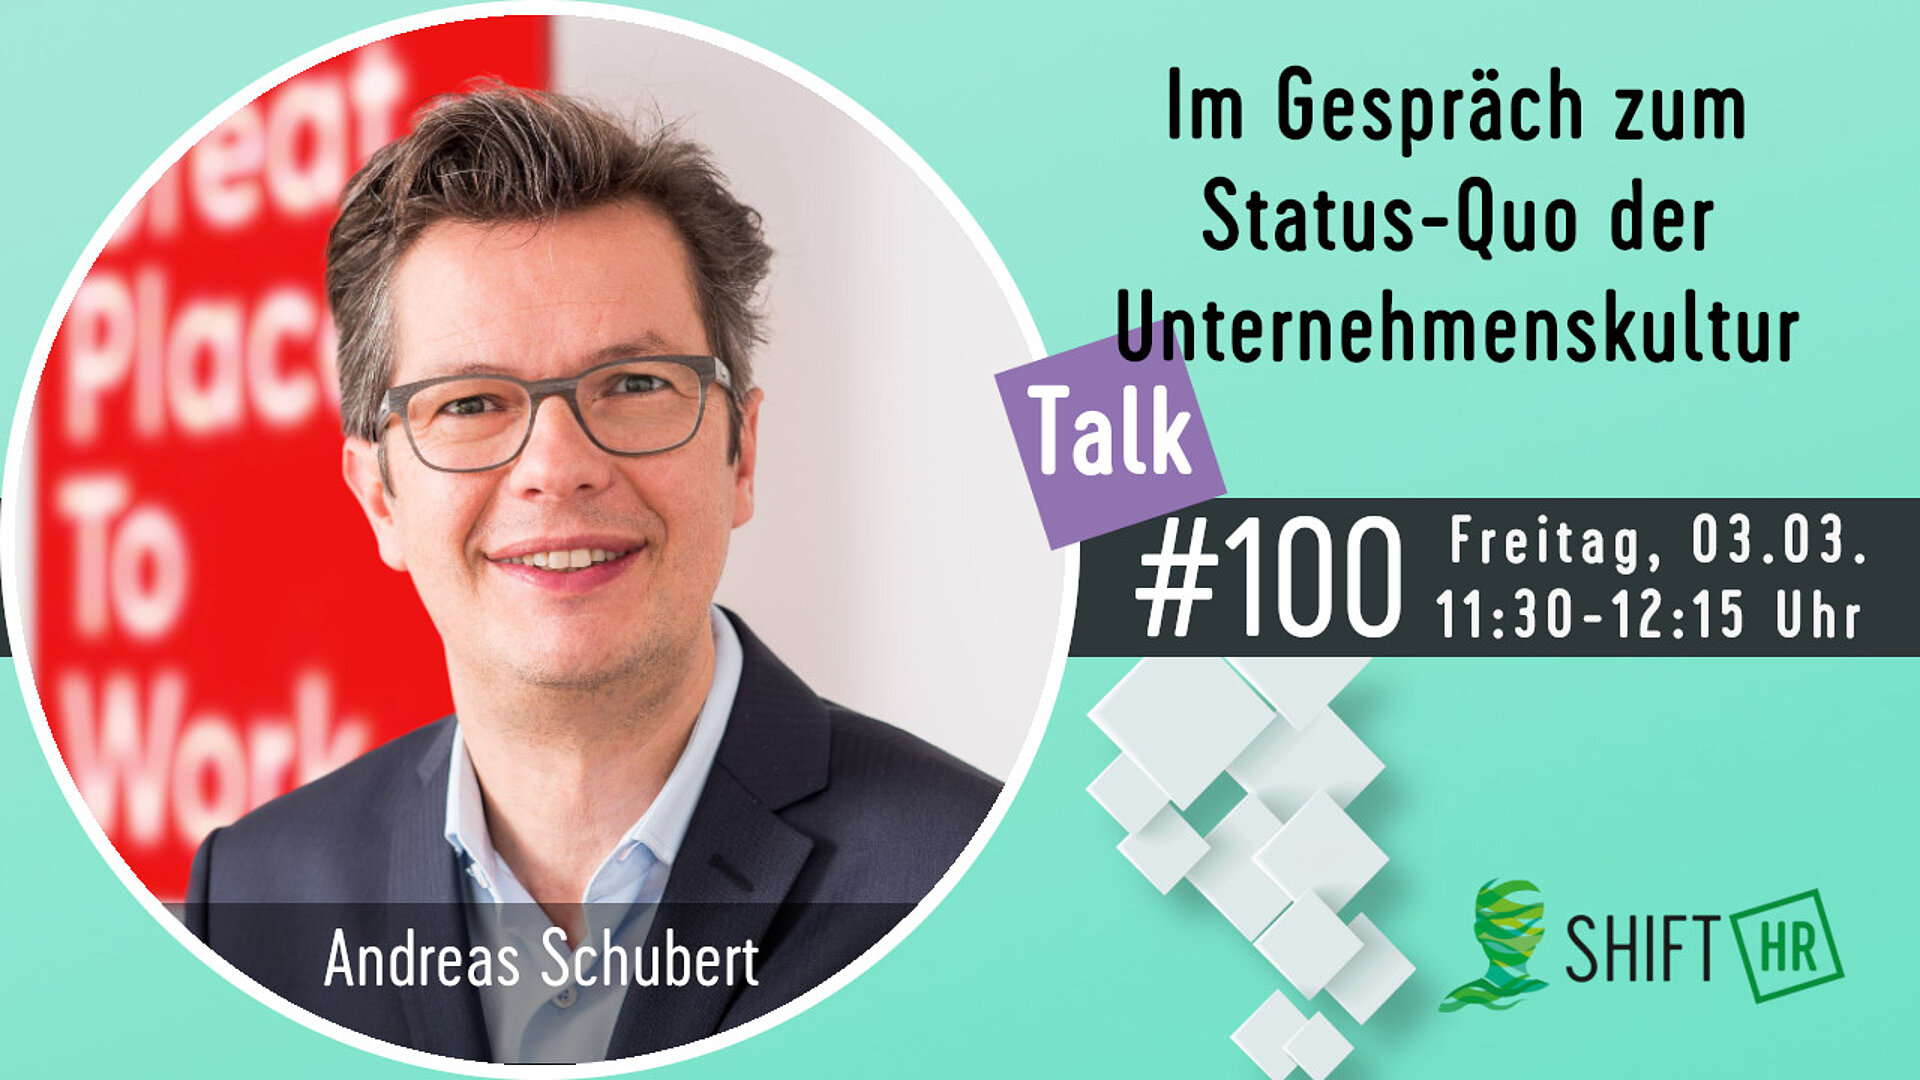 Im Gespräch mit Andreas Schubert zum Status-Quo der Unternehmenskultur in deutschen Unternehmen